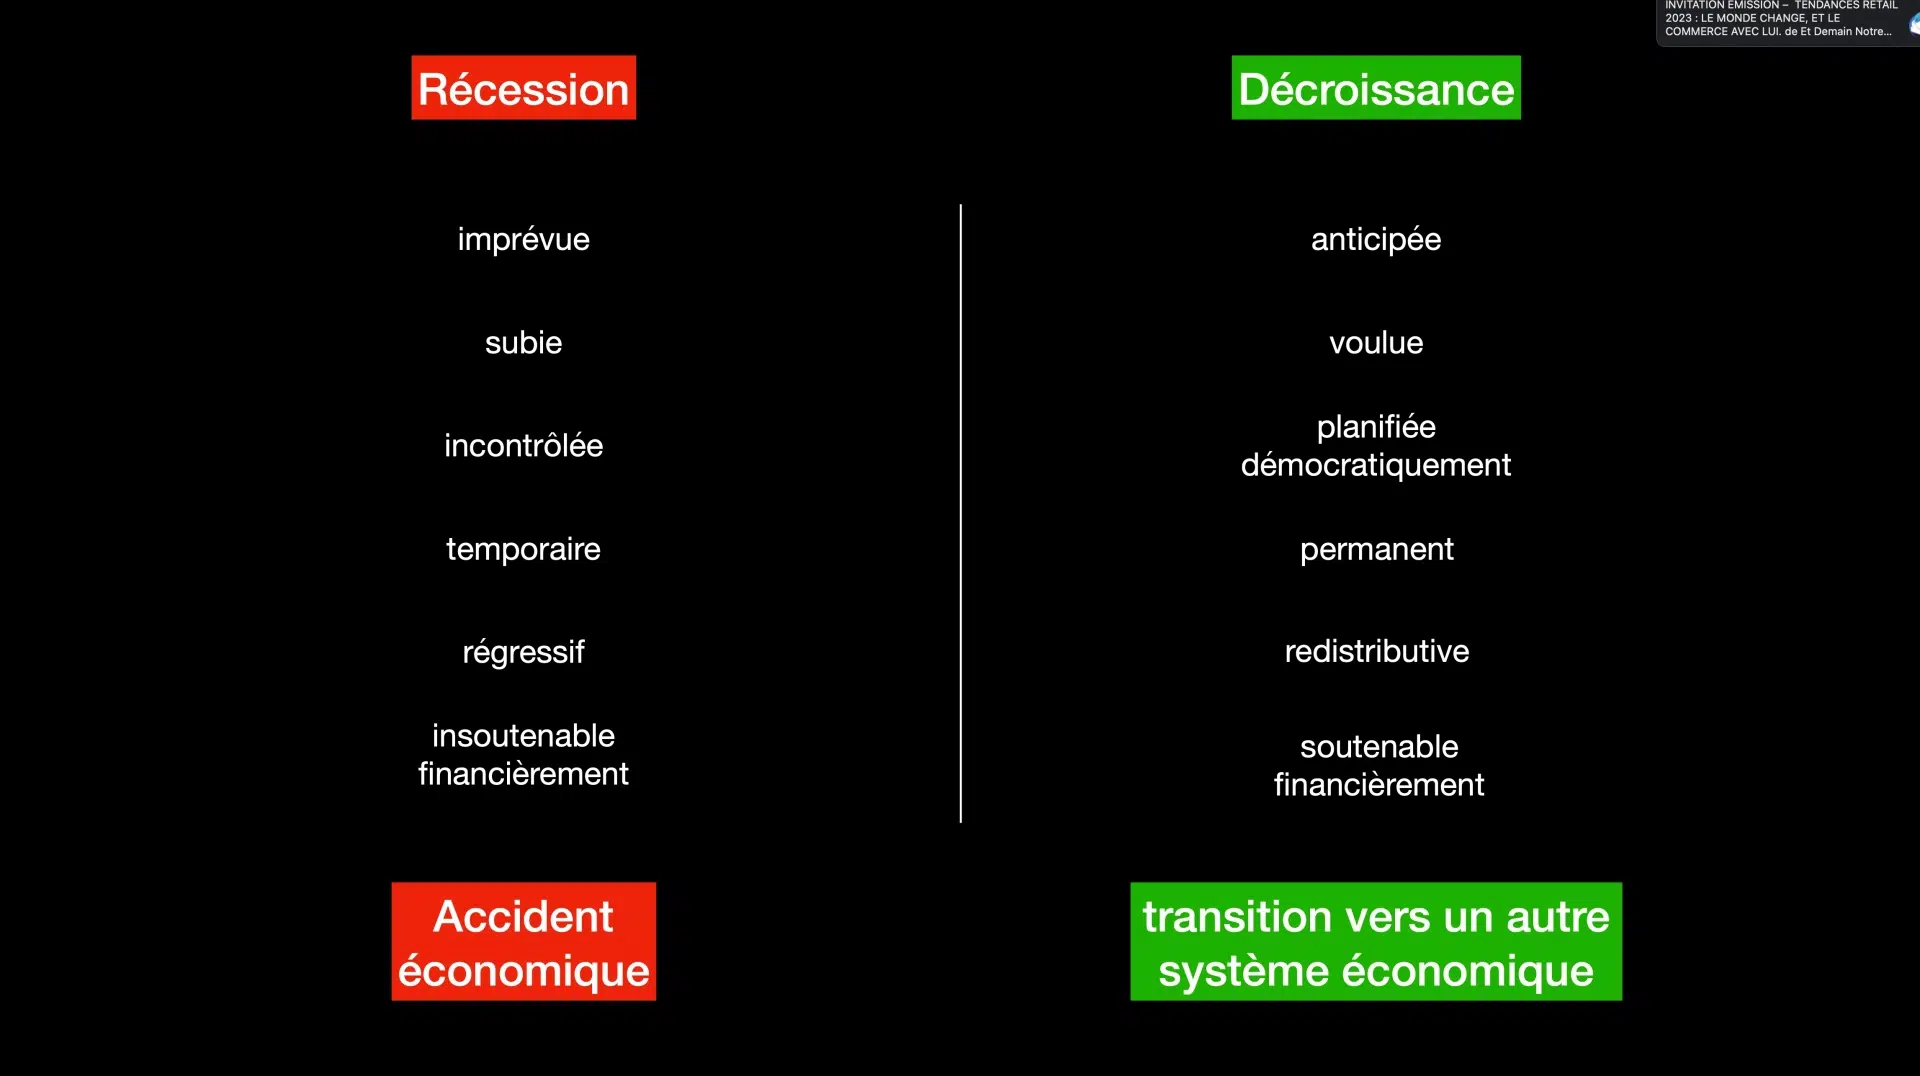 recession vs décroissance : les differences